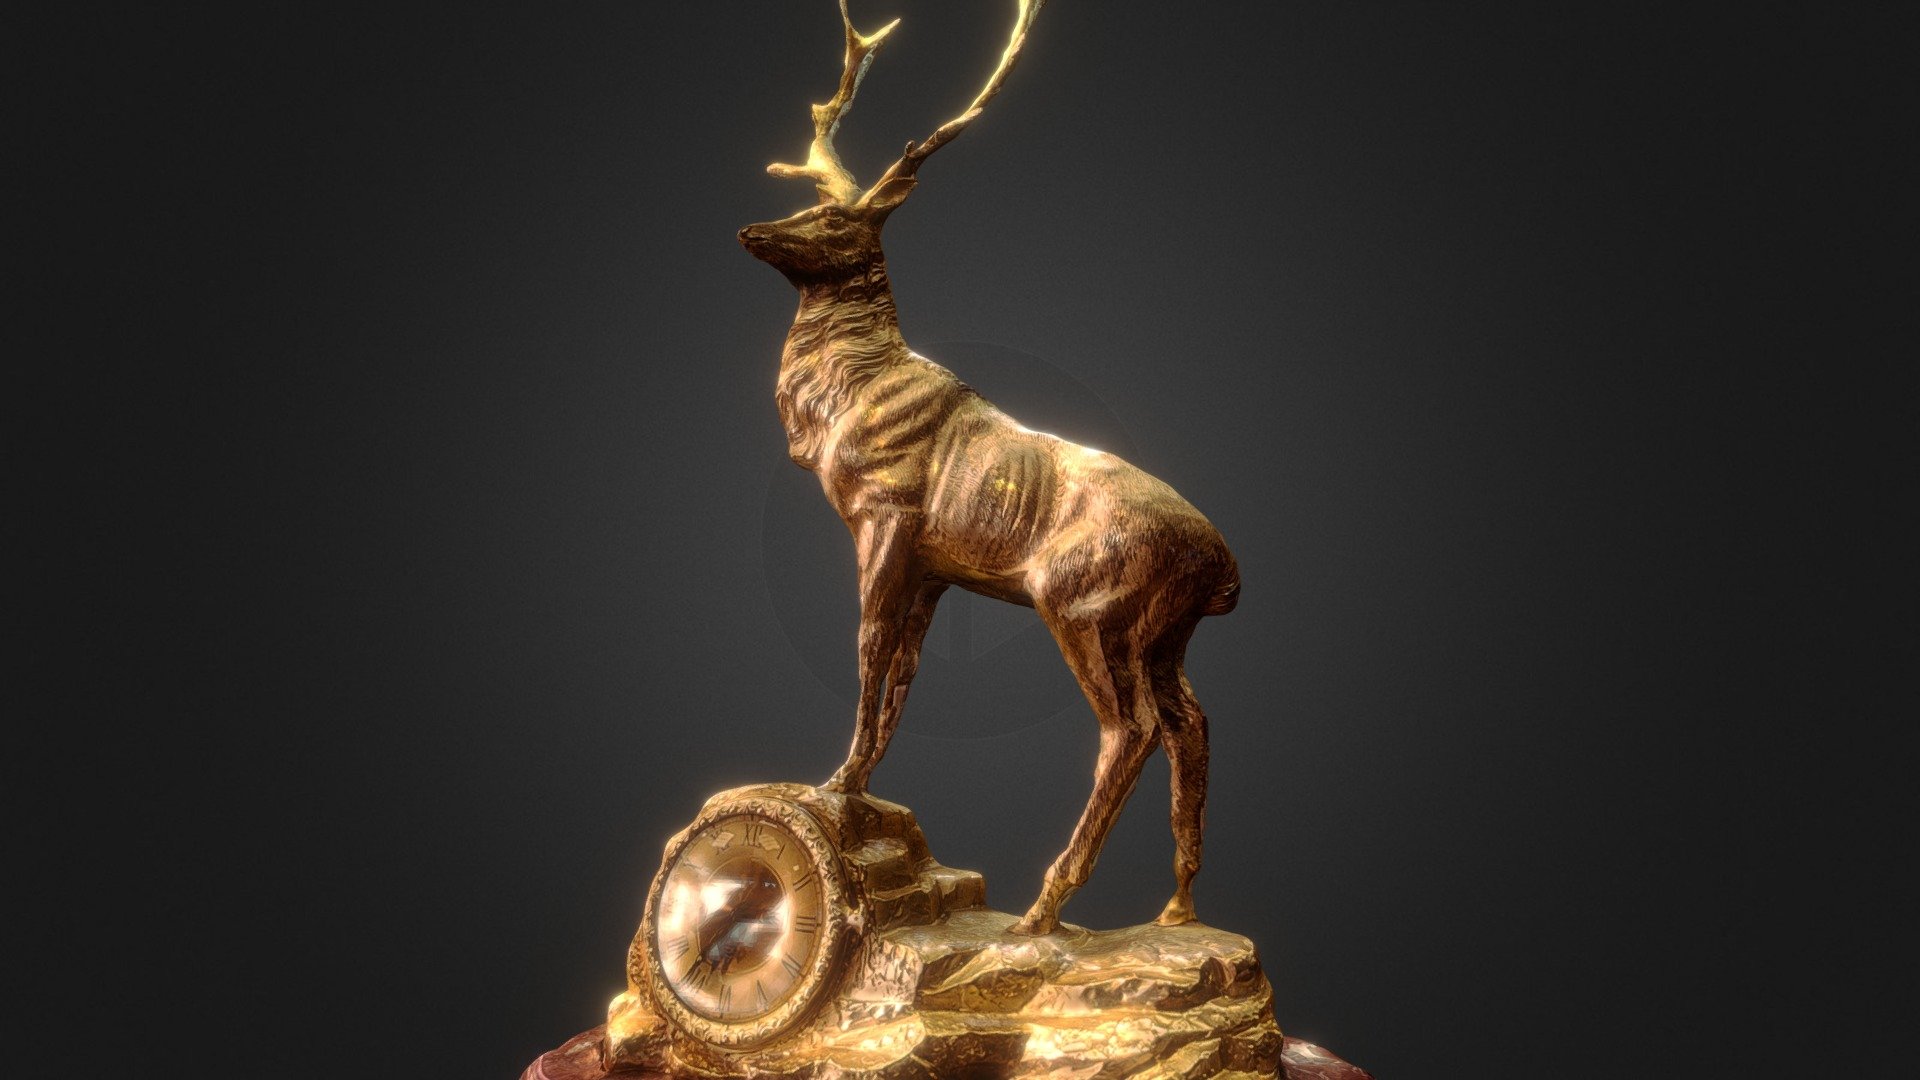 Gold plated Copper Sculpture Bucks Clock

Photogrammetry from 240 photos.

鍍金黃銅雄鹿座鐘 - Gold plated Brass Sculpture Bucks Clock 鍍金黃銅雄鹿座鐘 - 3D model by mark.energy 3d model